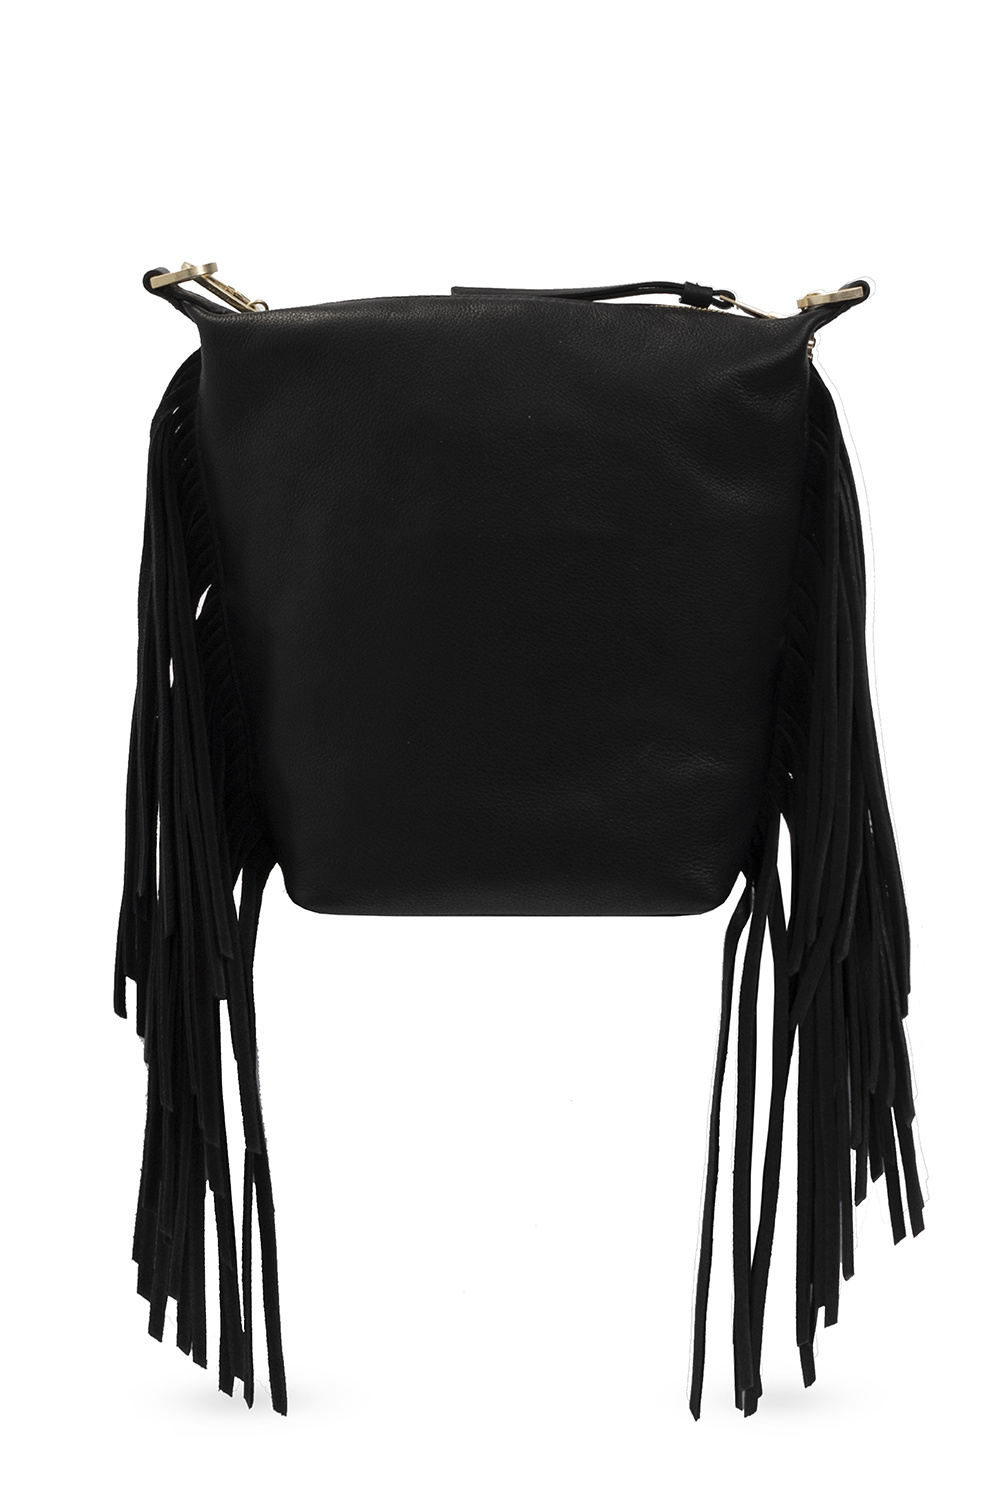 AllSaints ‘Evaline’ shoulder bag